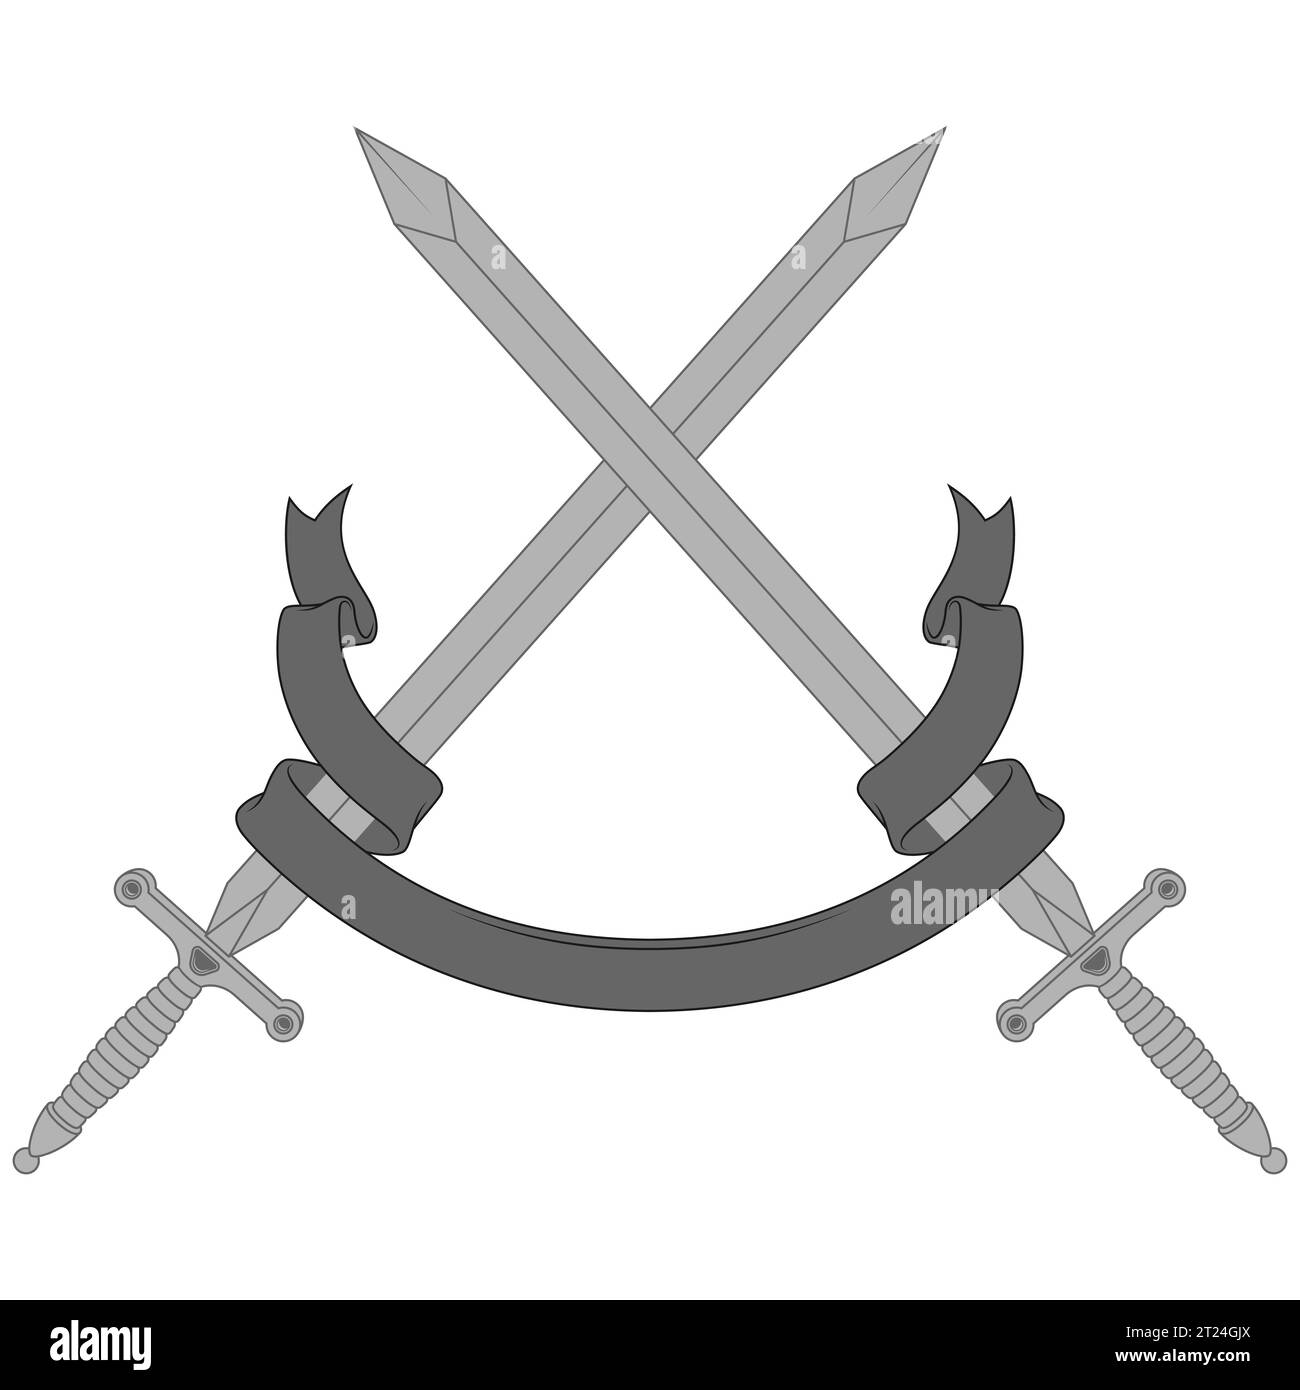 Design vettoriale della spada medievale europea, spade medievali circondate da un nastro araldico Illustrazione Vettoriale